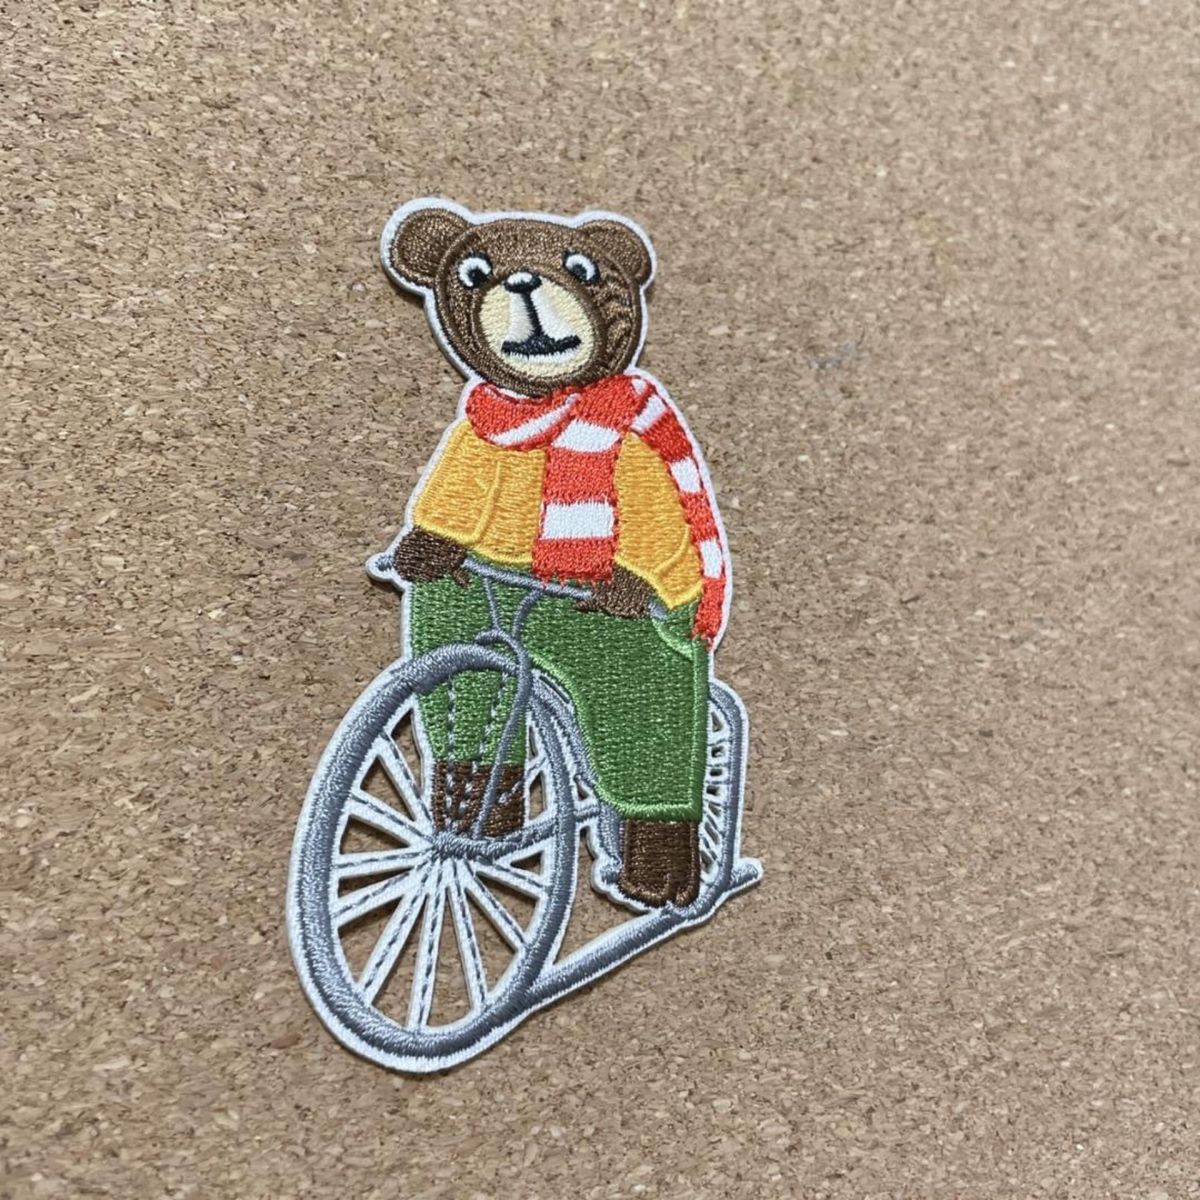 158 シール ワッペン 熊 自転車 マフラー 刺繍 リメイク ハンドメイド くま クマ